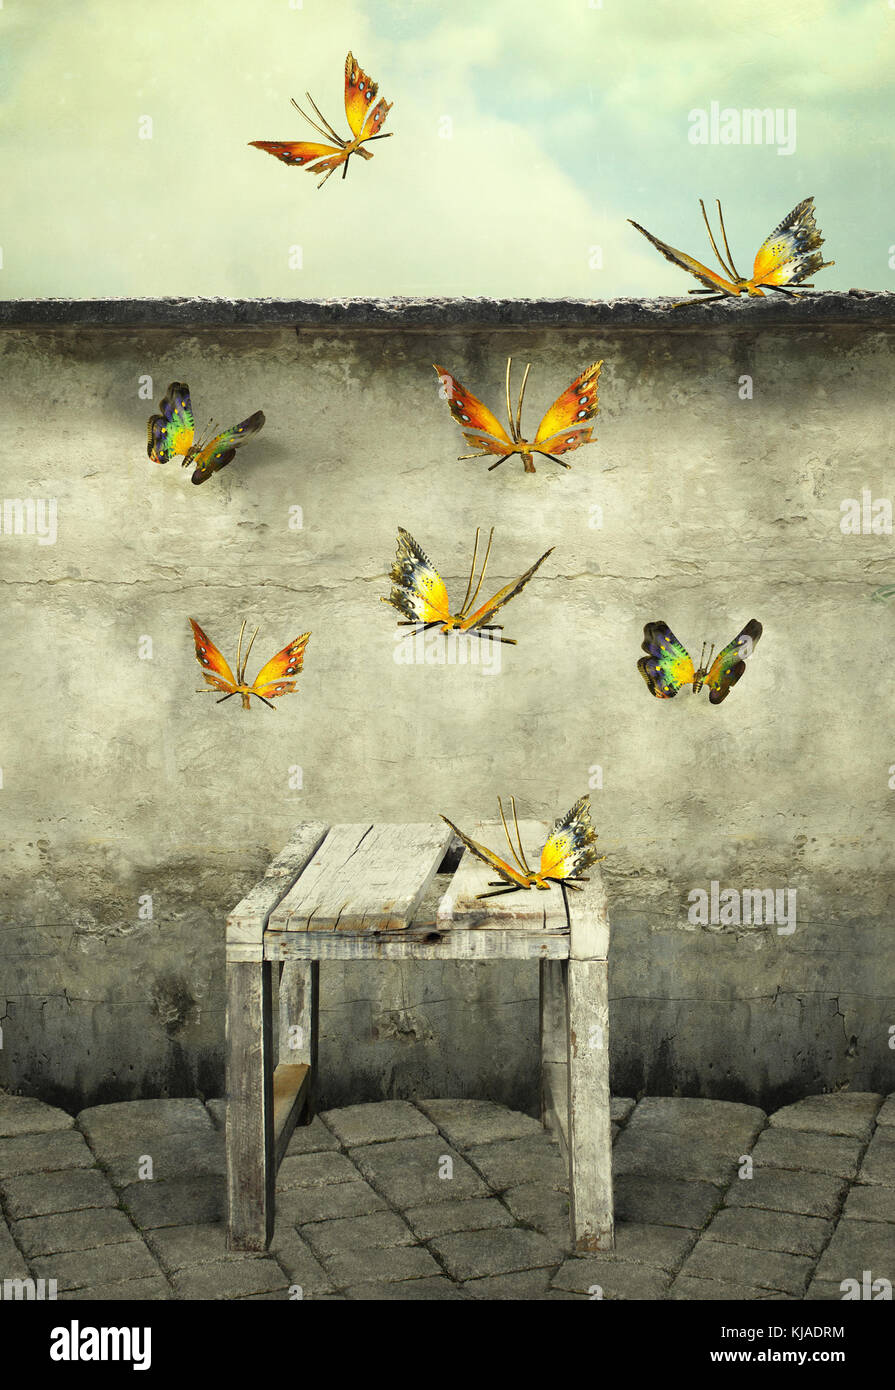 Muchas coloridas mariposas volando hacia el cielo con un peeling de pared y un banco, foto ilustrativa y artístico Foto de stock